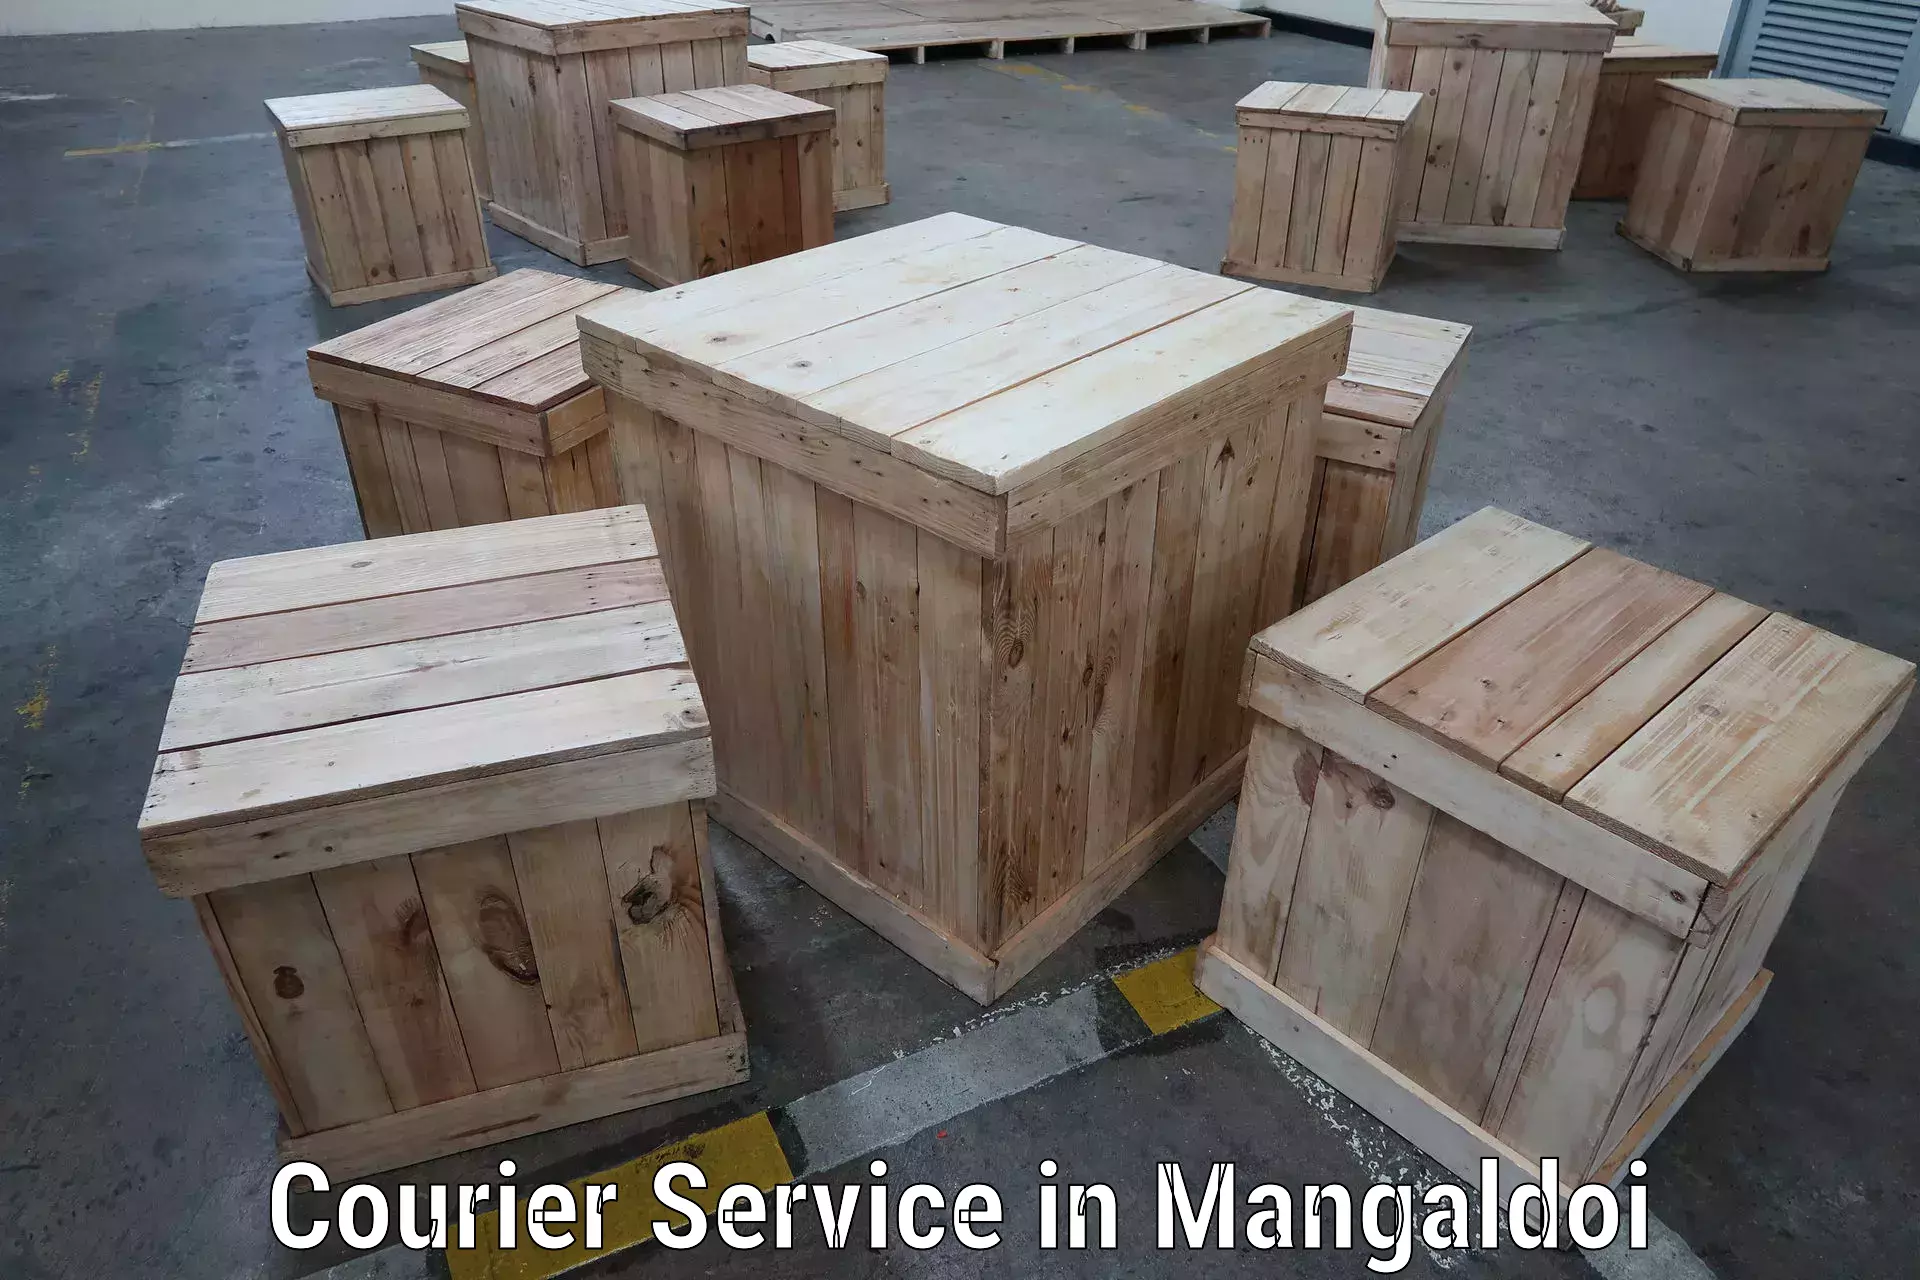 Courier service comparison in Mangaldoi